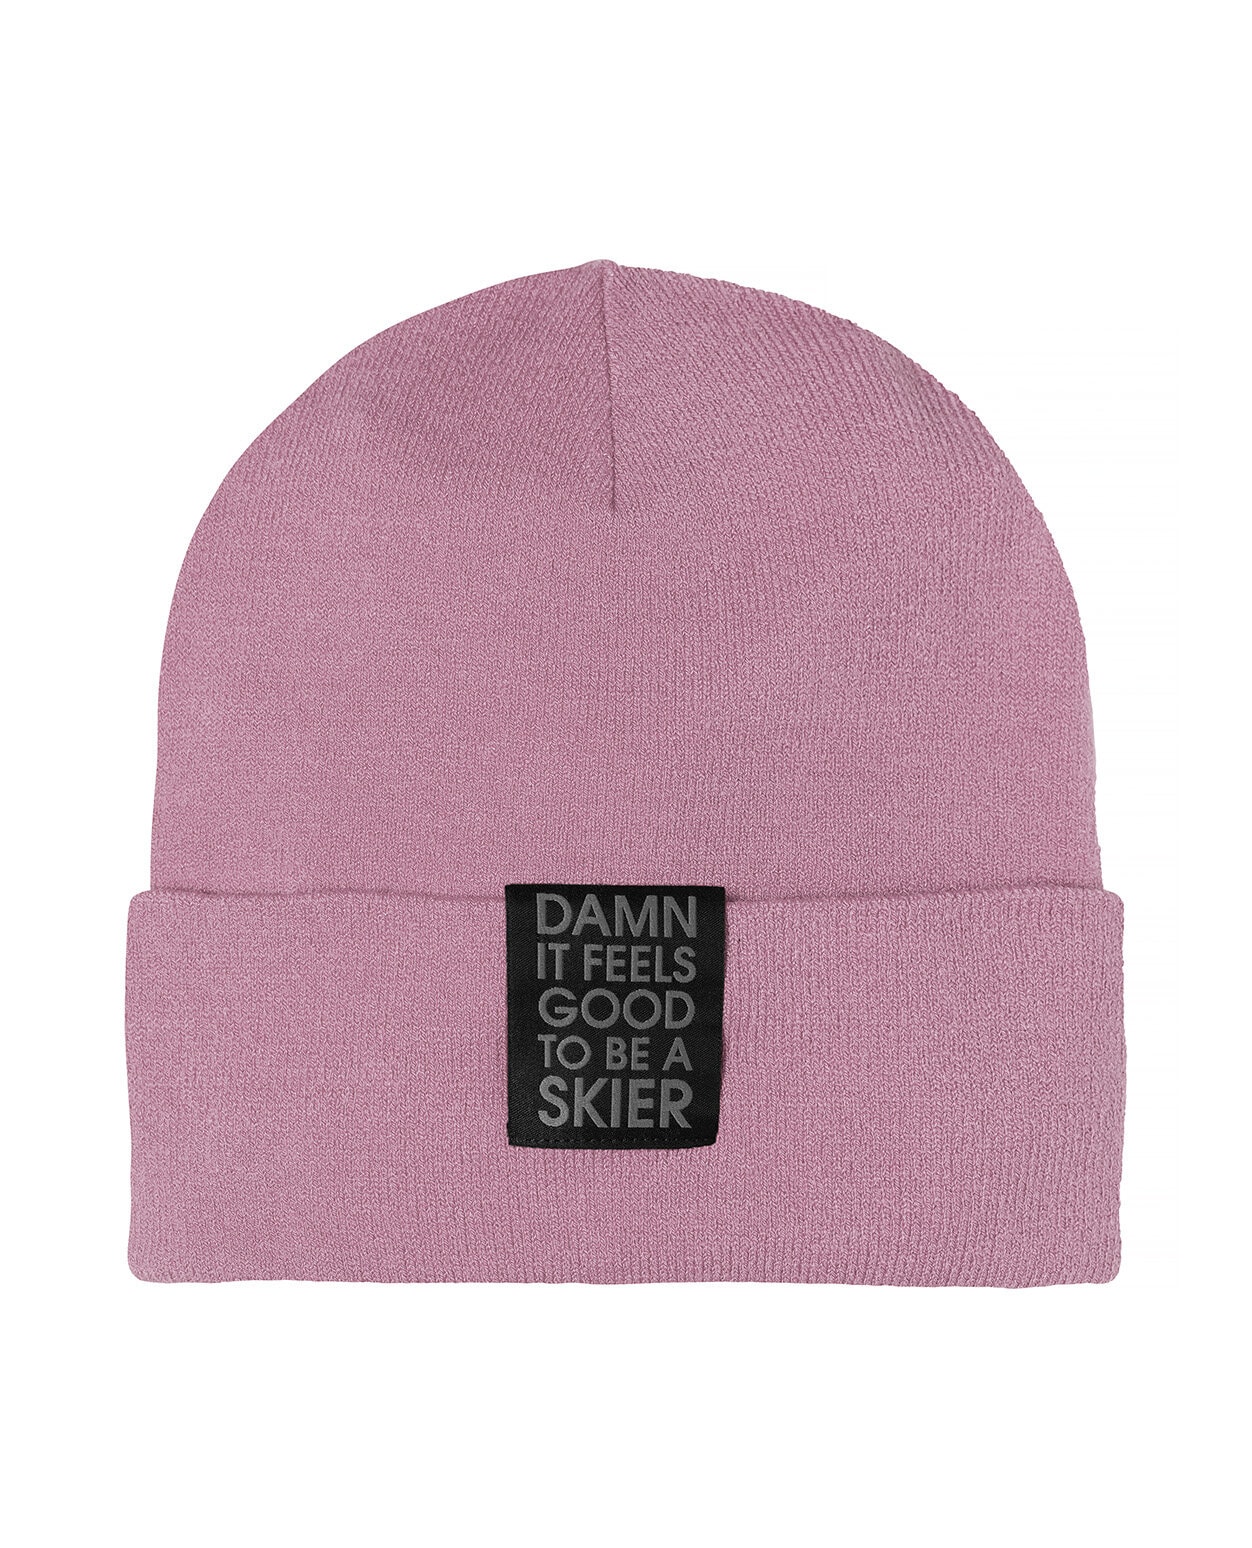 Elevenate Skier Beanie Pink Dawn